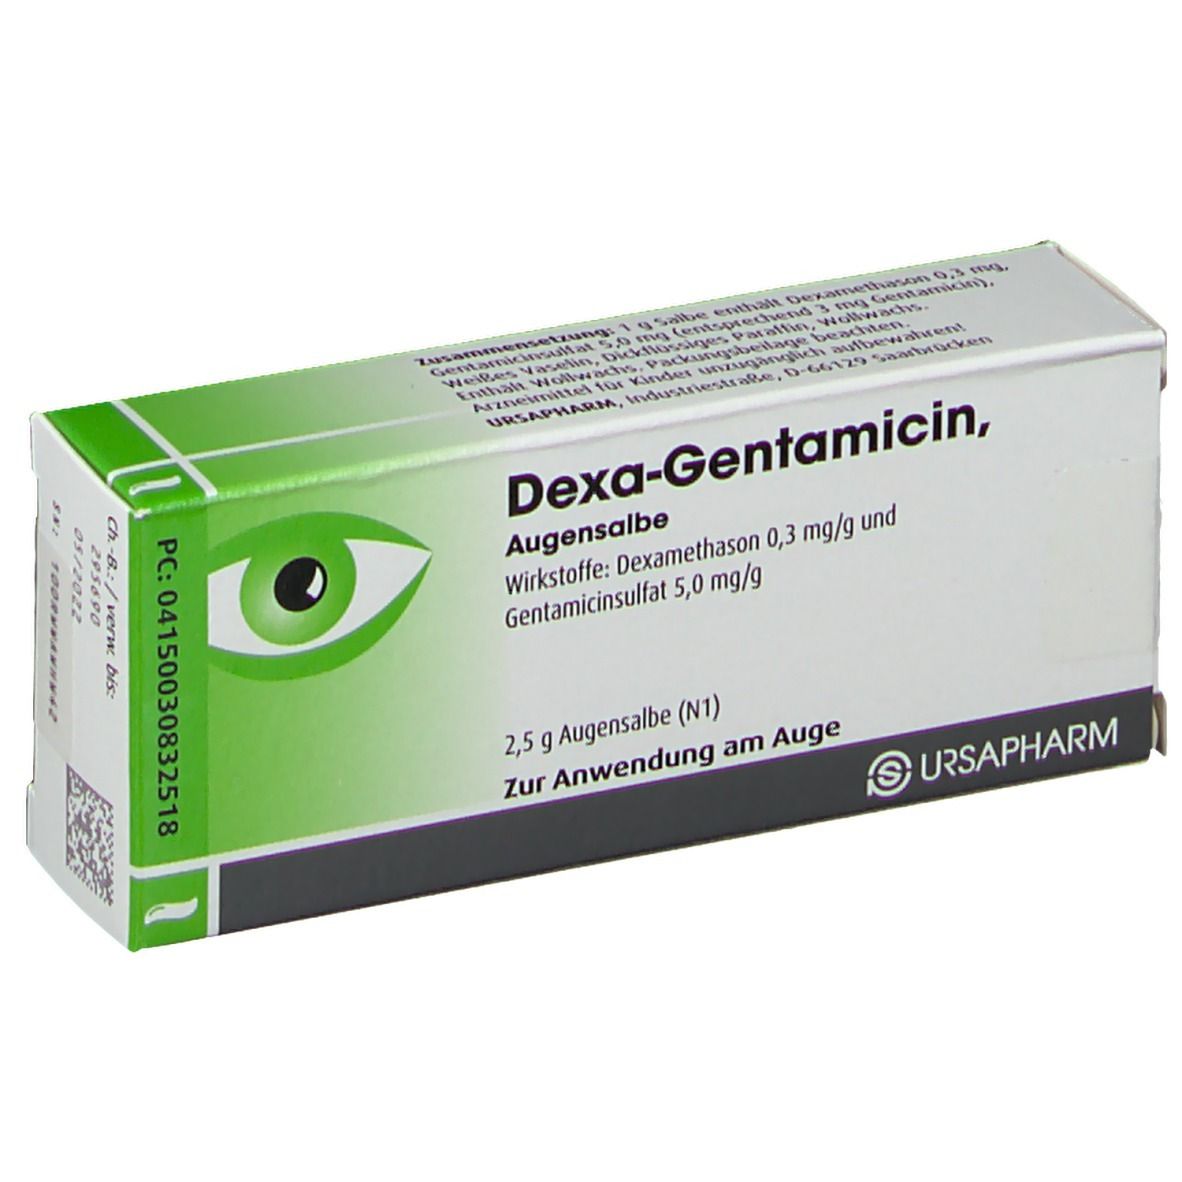 Dexa-Gentamicin Augensalbe